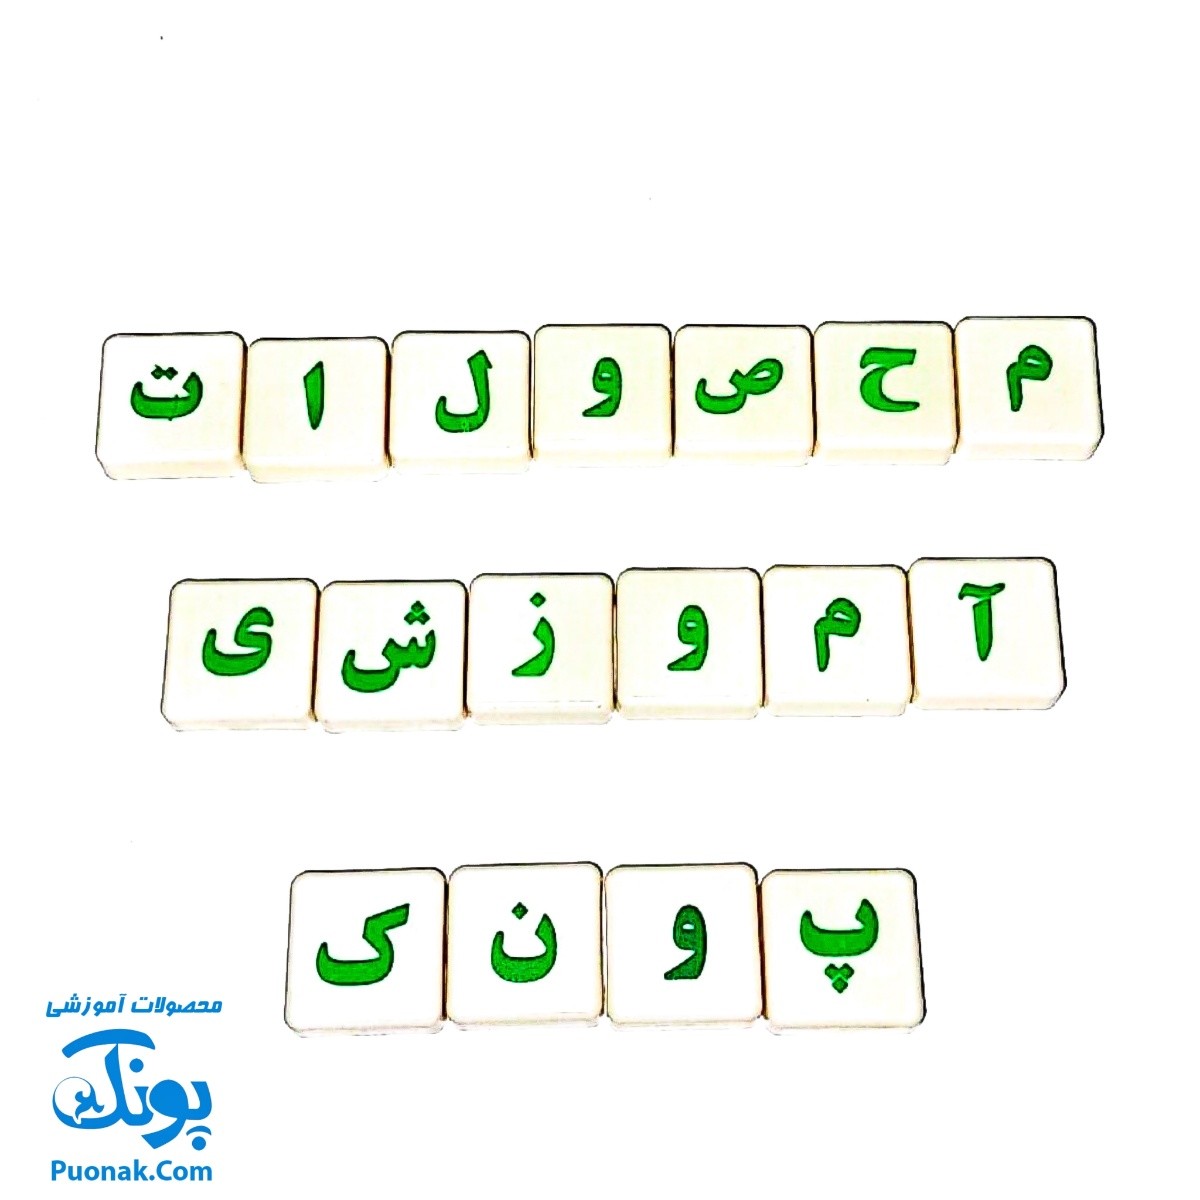 فوروتس موز آموزش حروف و کلمات الفبای فارسی به کودکان ۱۱۰ قطعه Fruits